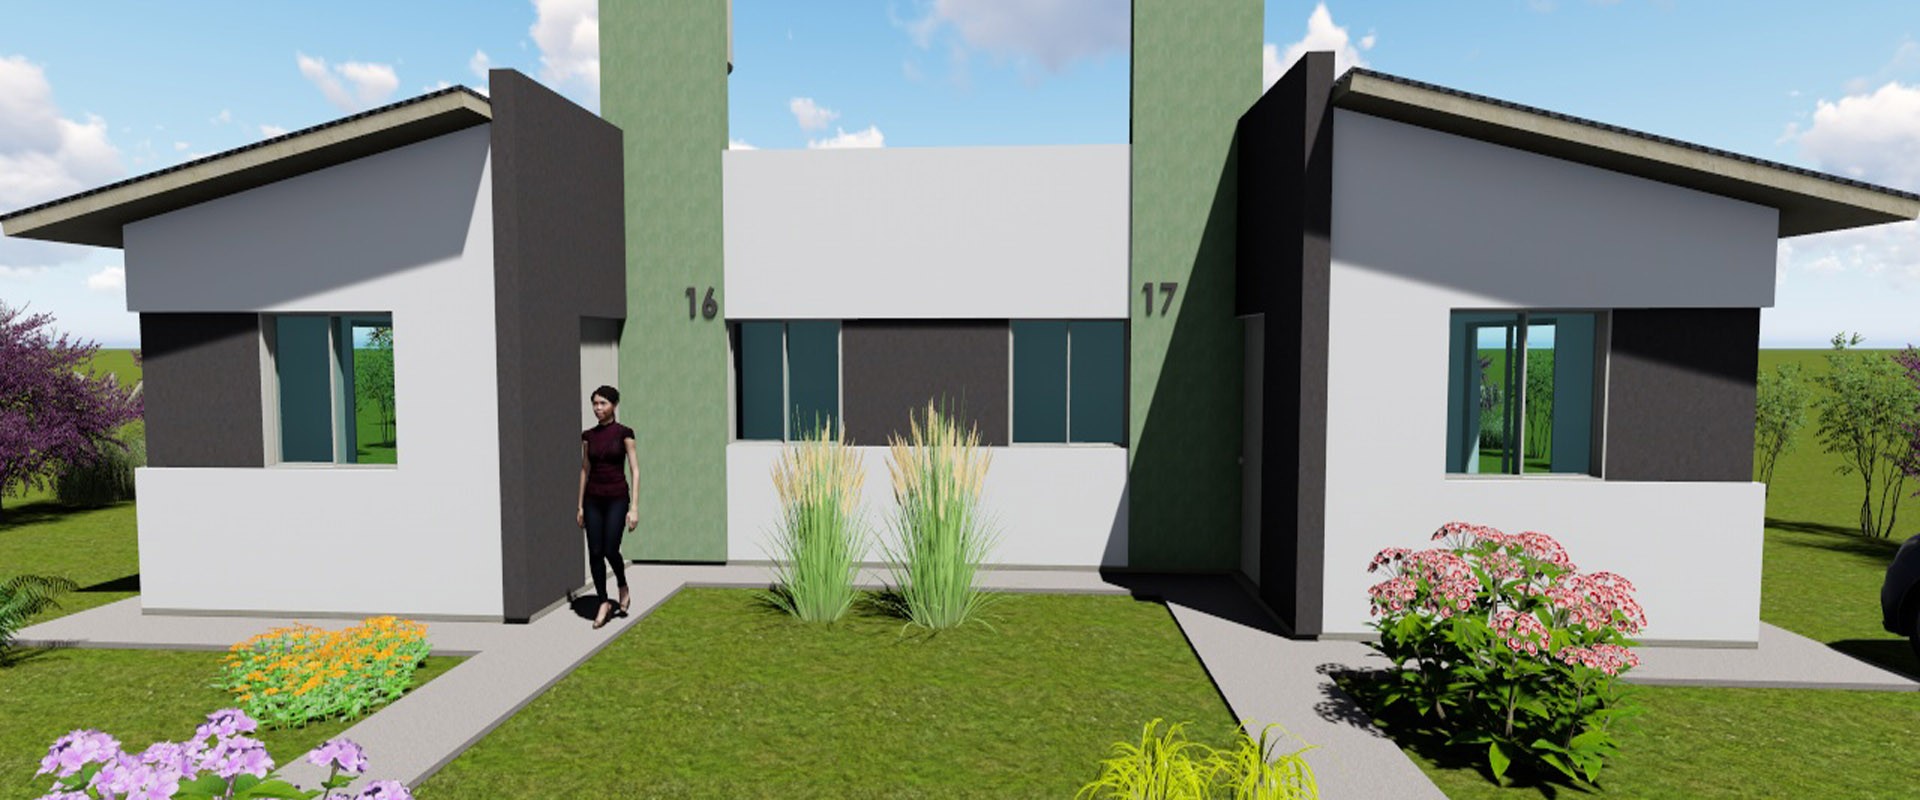 Con fondos provinciales se construirán 10 viviendas en Villa Domínguez